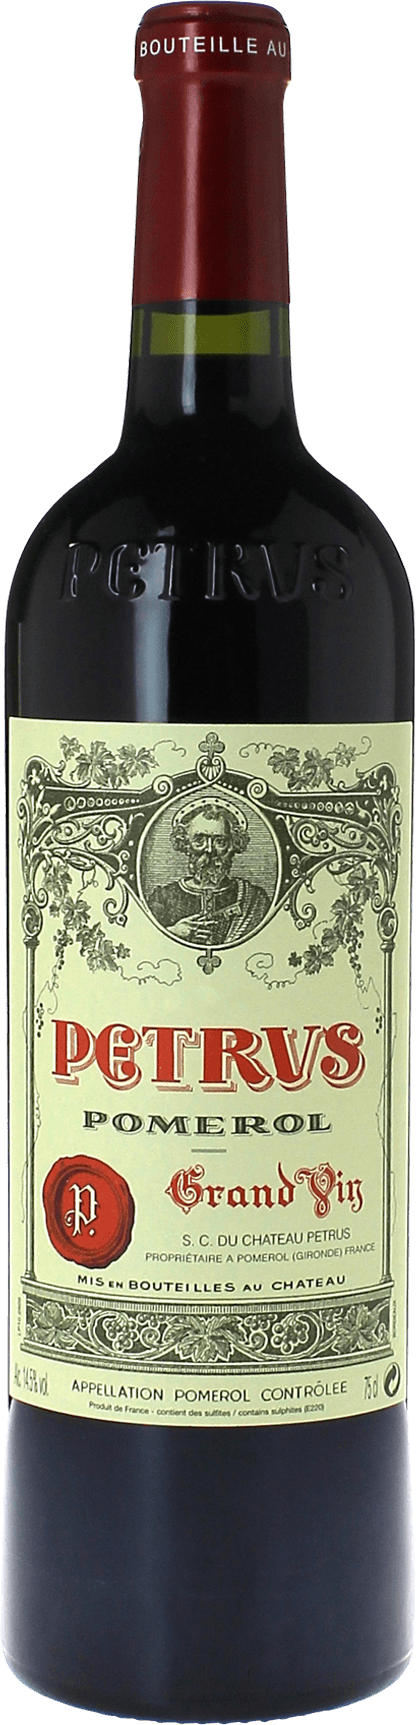 Petrus 1971  Pomerol, Bordeaux rouge